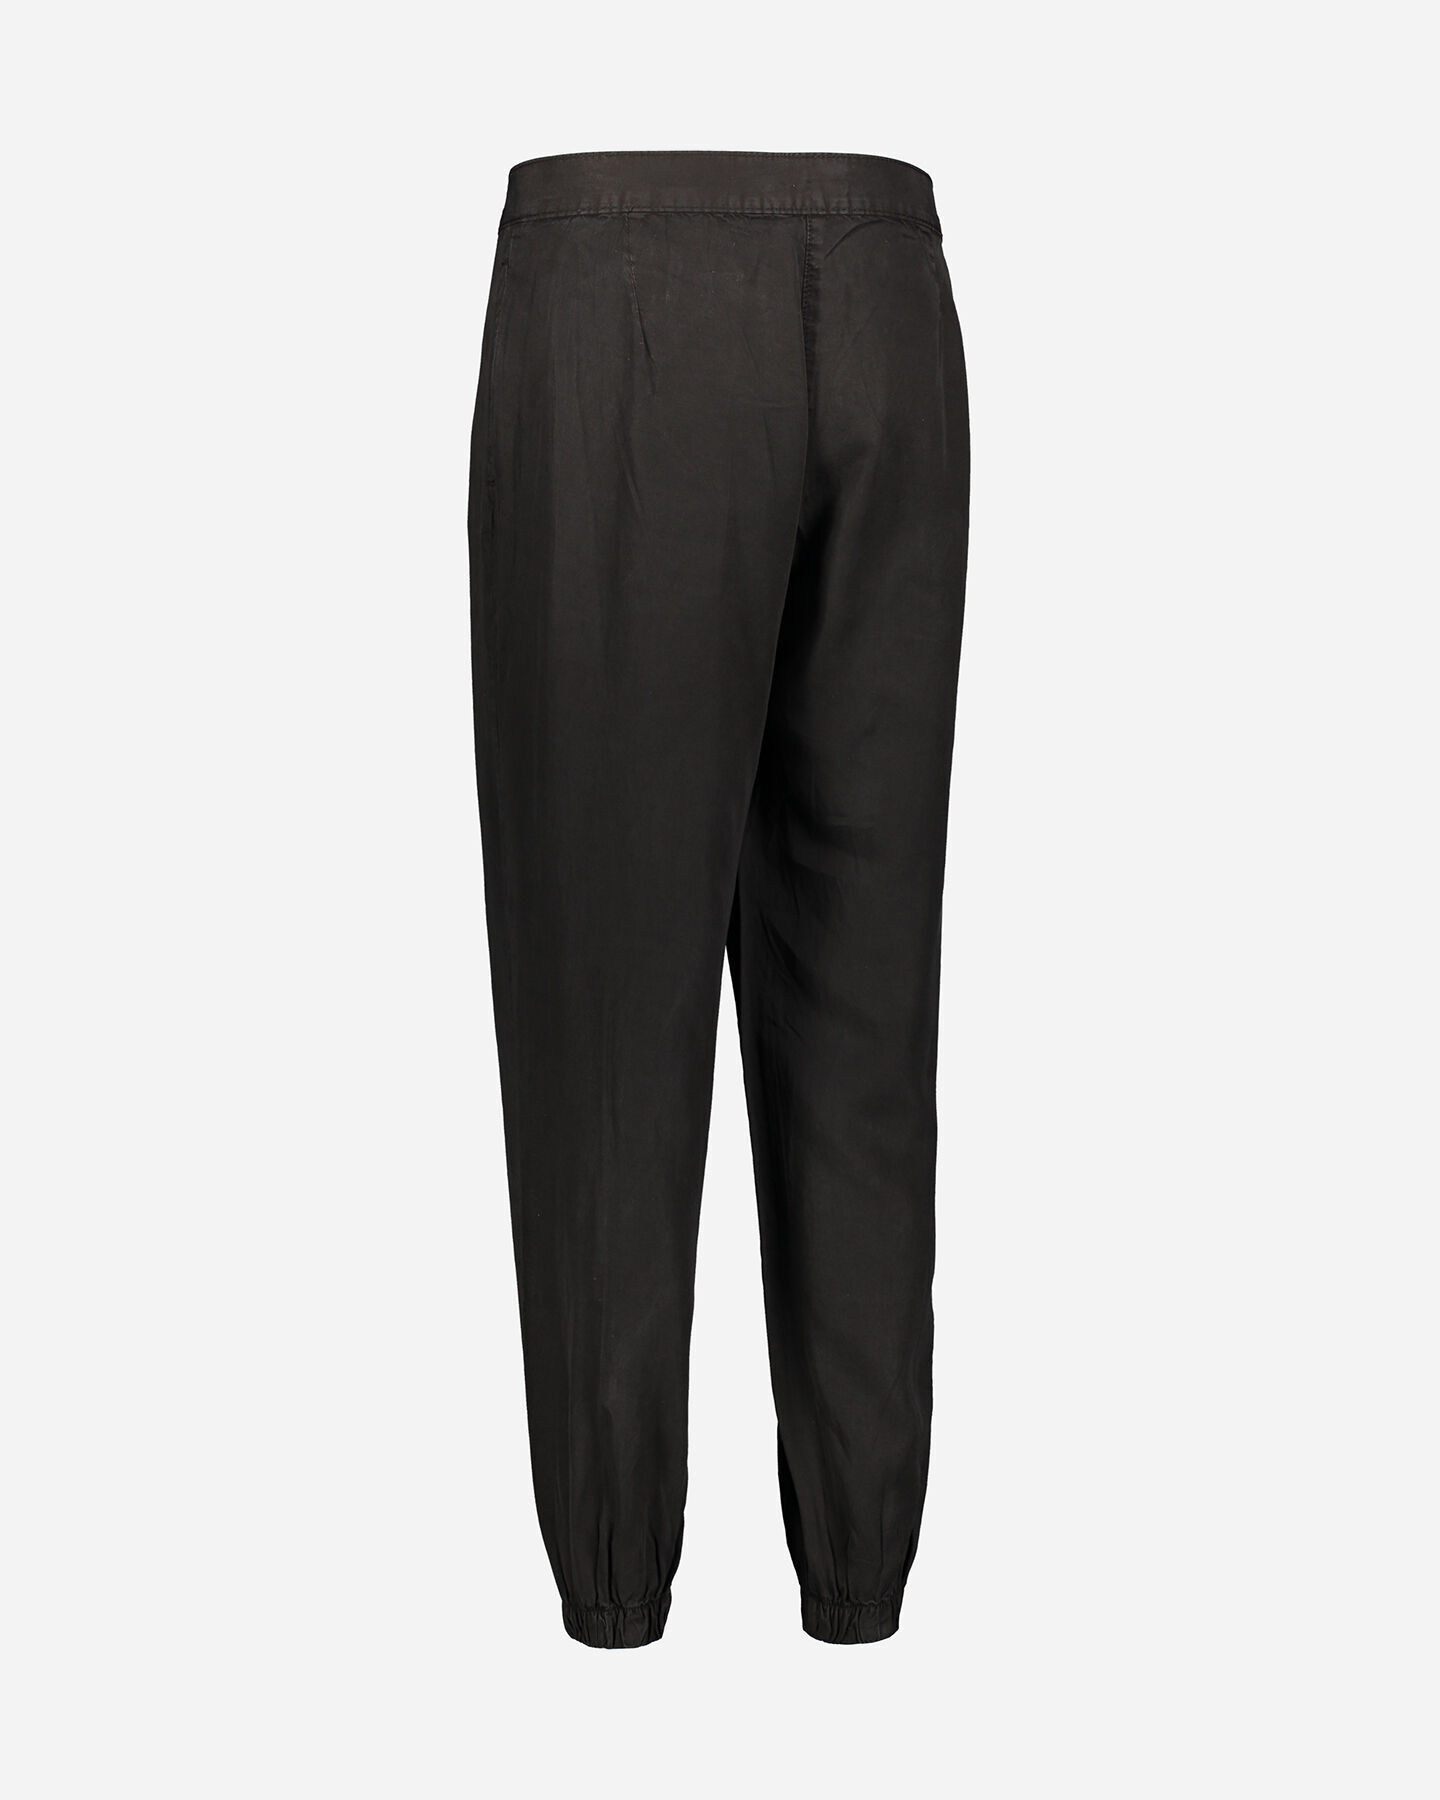  Pantalone DACK'S CUFF TENCEL W S4086726|050|S scatto 5